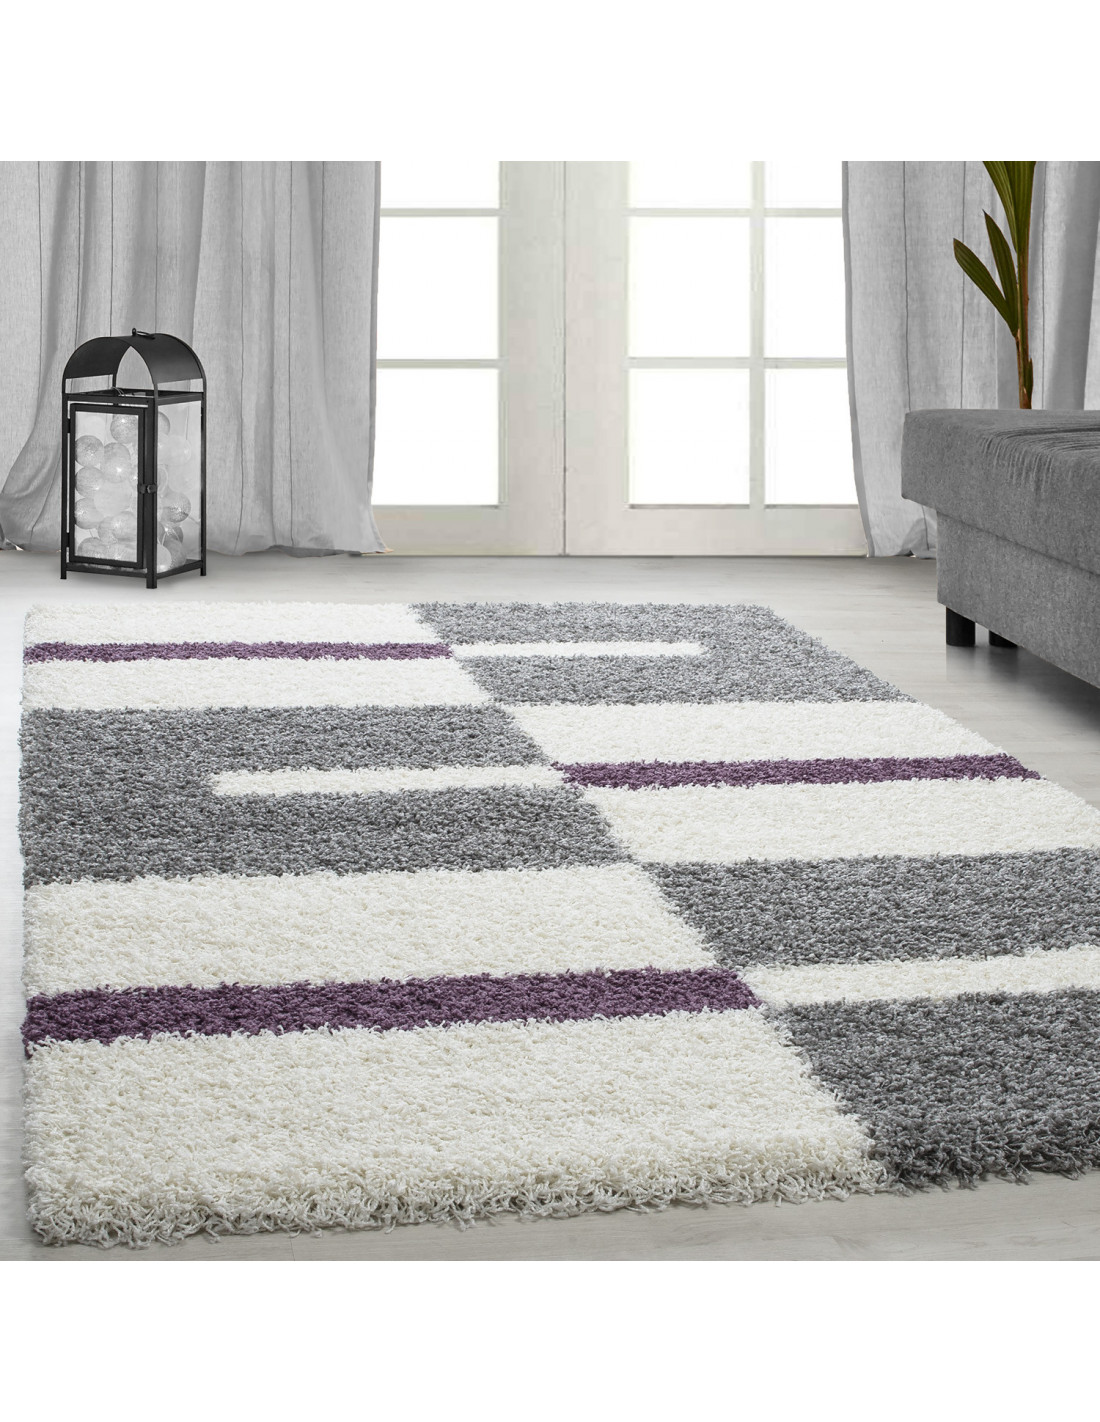 Altezza pelo tappeto shaggy 3 cm grigio-bianco-viola